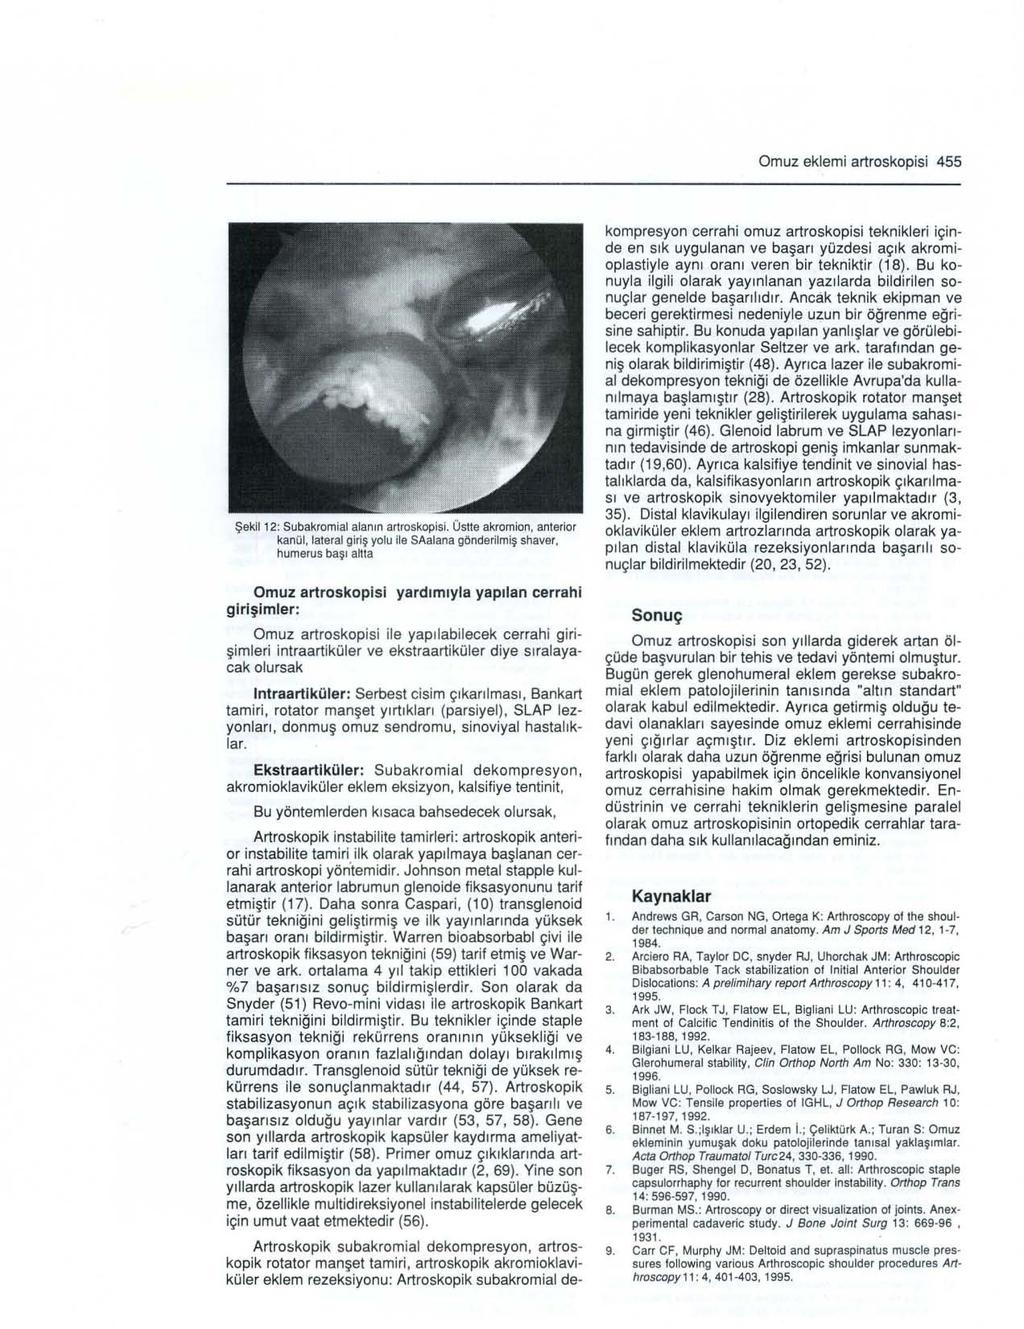 Omuz eklemi artroskopisi 455 Şekil 12: Subakromial alanın artroskopisi.